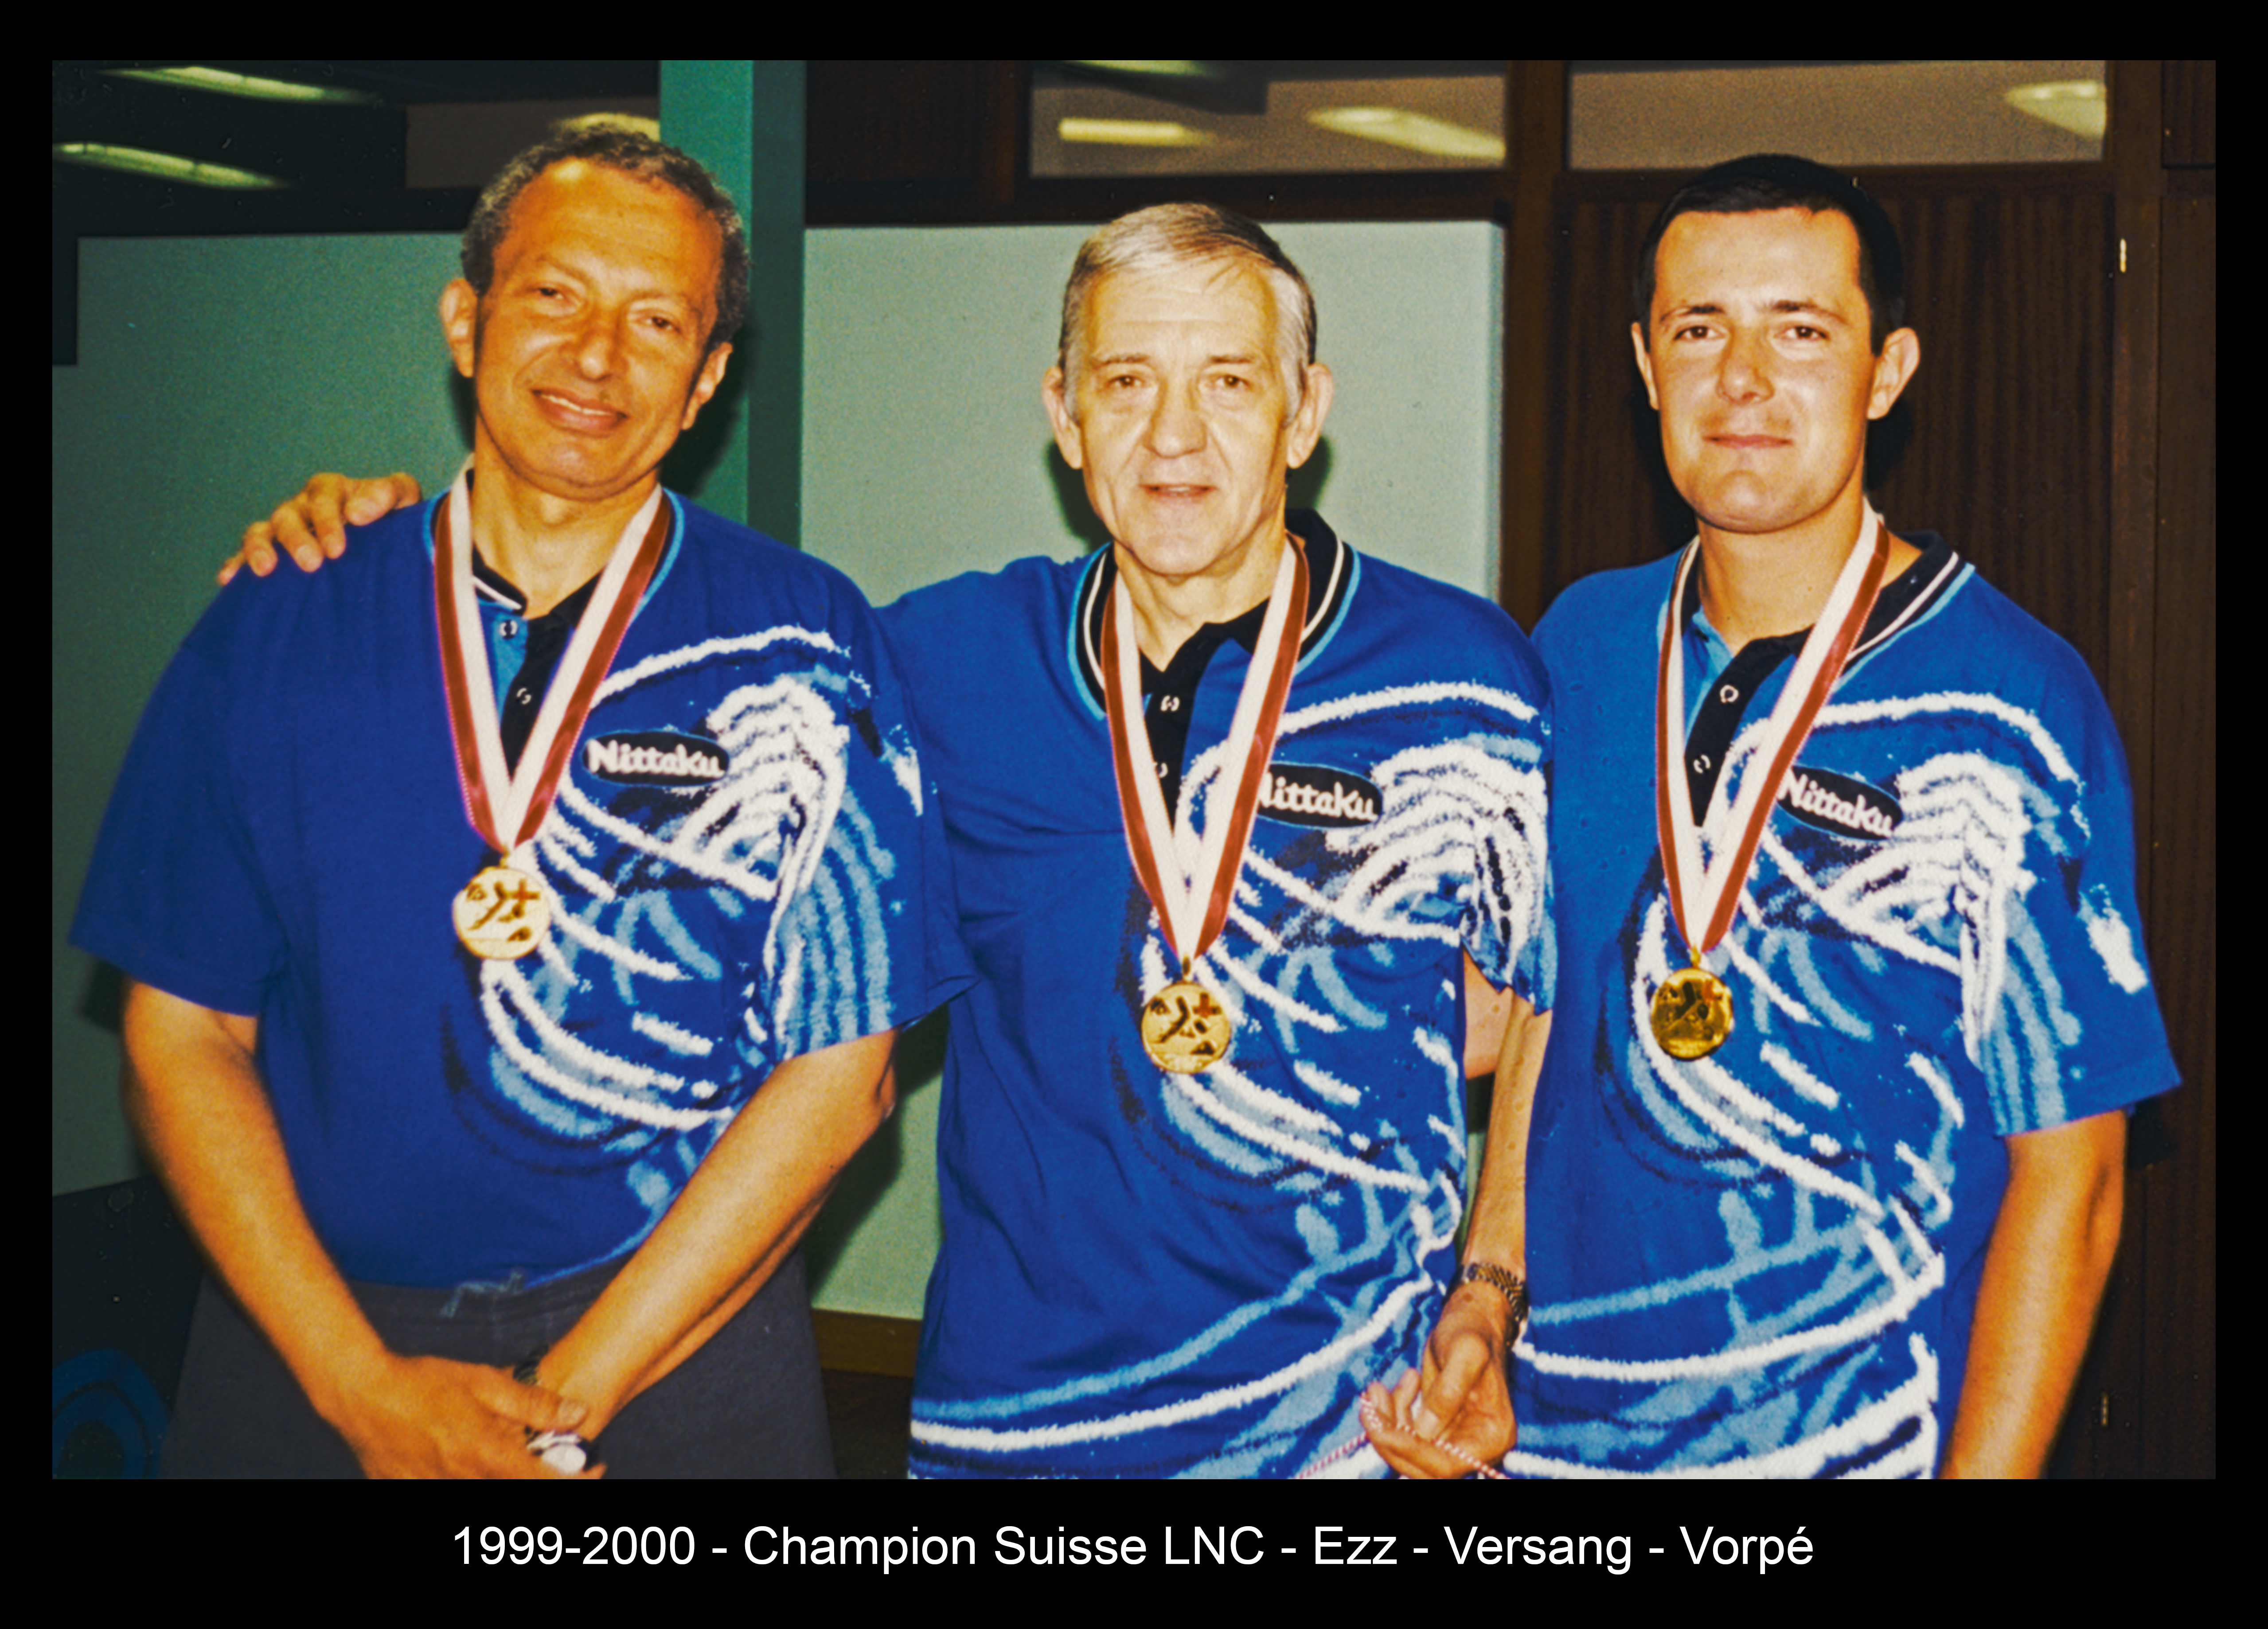 1999-2000 - Champion Suisse LNC - Ezz - Versang - Vorpé